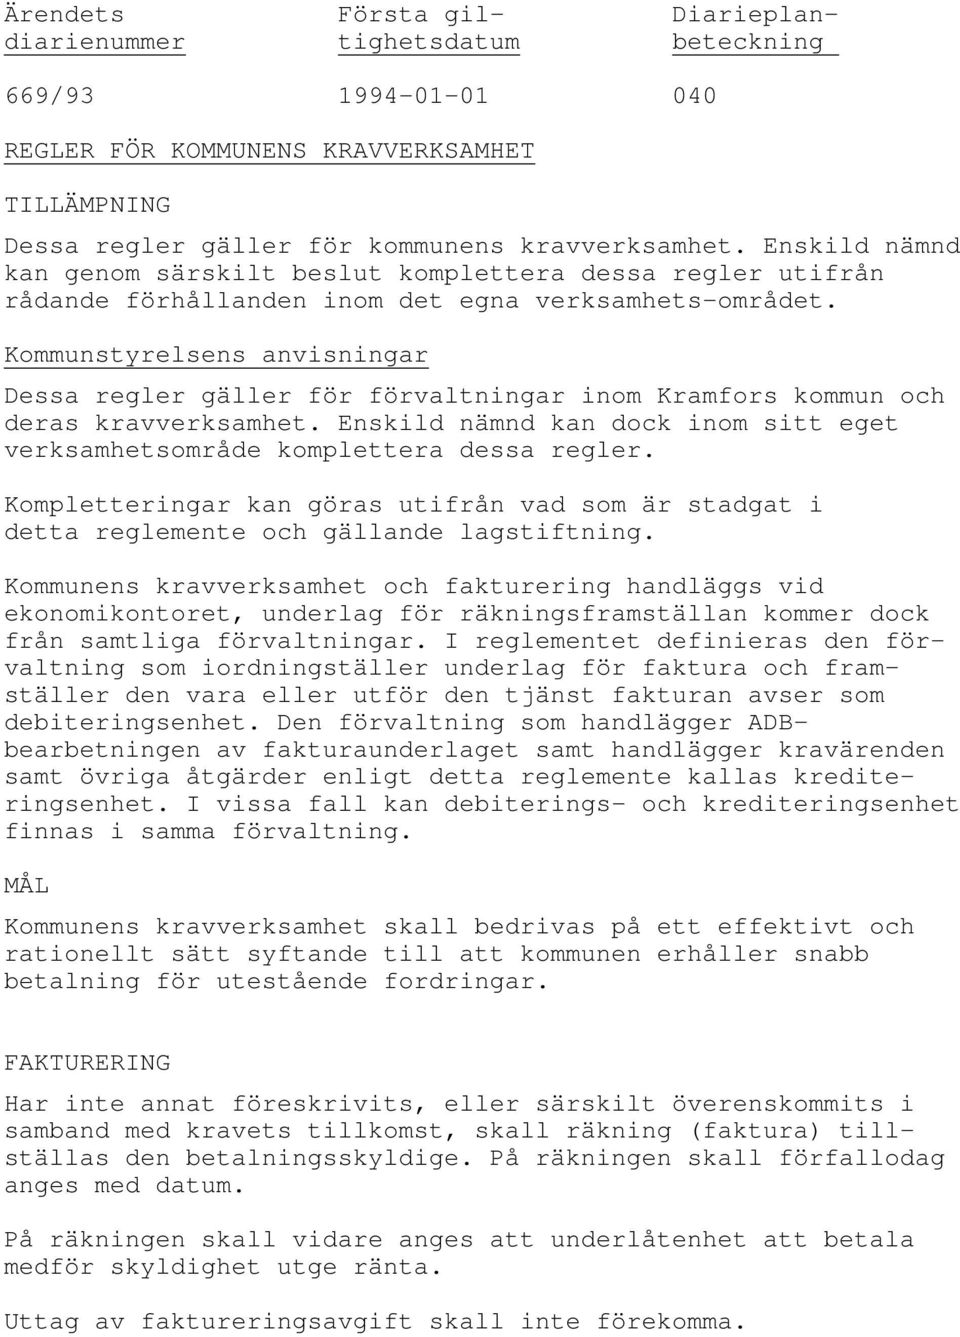 Dessa regler gäller för förvaltningar inom Kramfors kommun och deras kravverksamhet. Enskild nämnd kan dock inom sitt eget verksamhetsområde komplettera dessa regler.